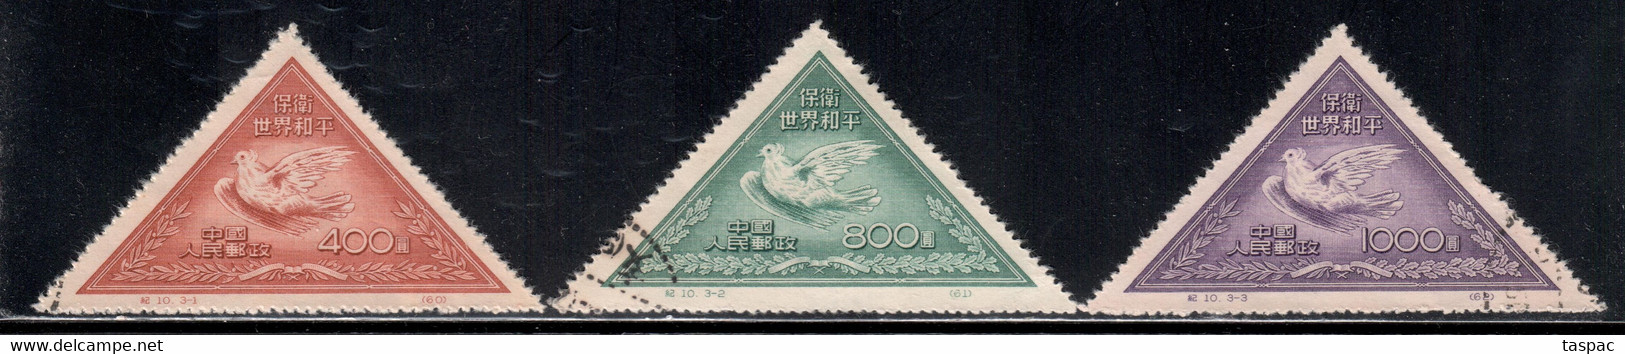 China P.R. 1951 Mi# 113-115 II Used - Reprints - Picasso Dove - Officiële Herdrukken